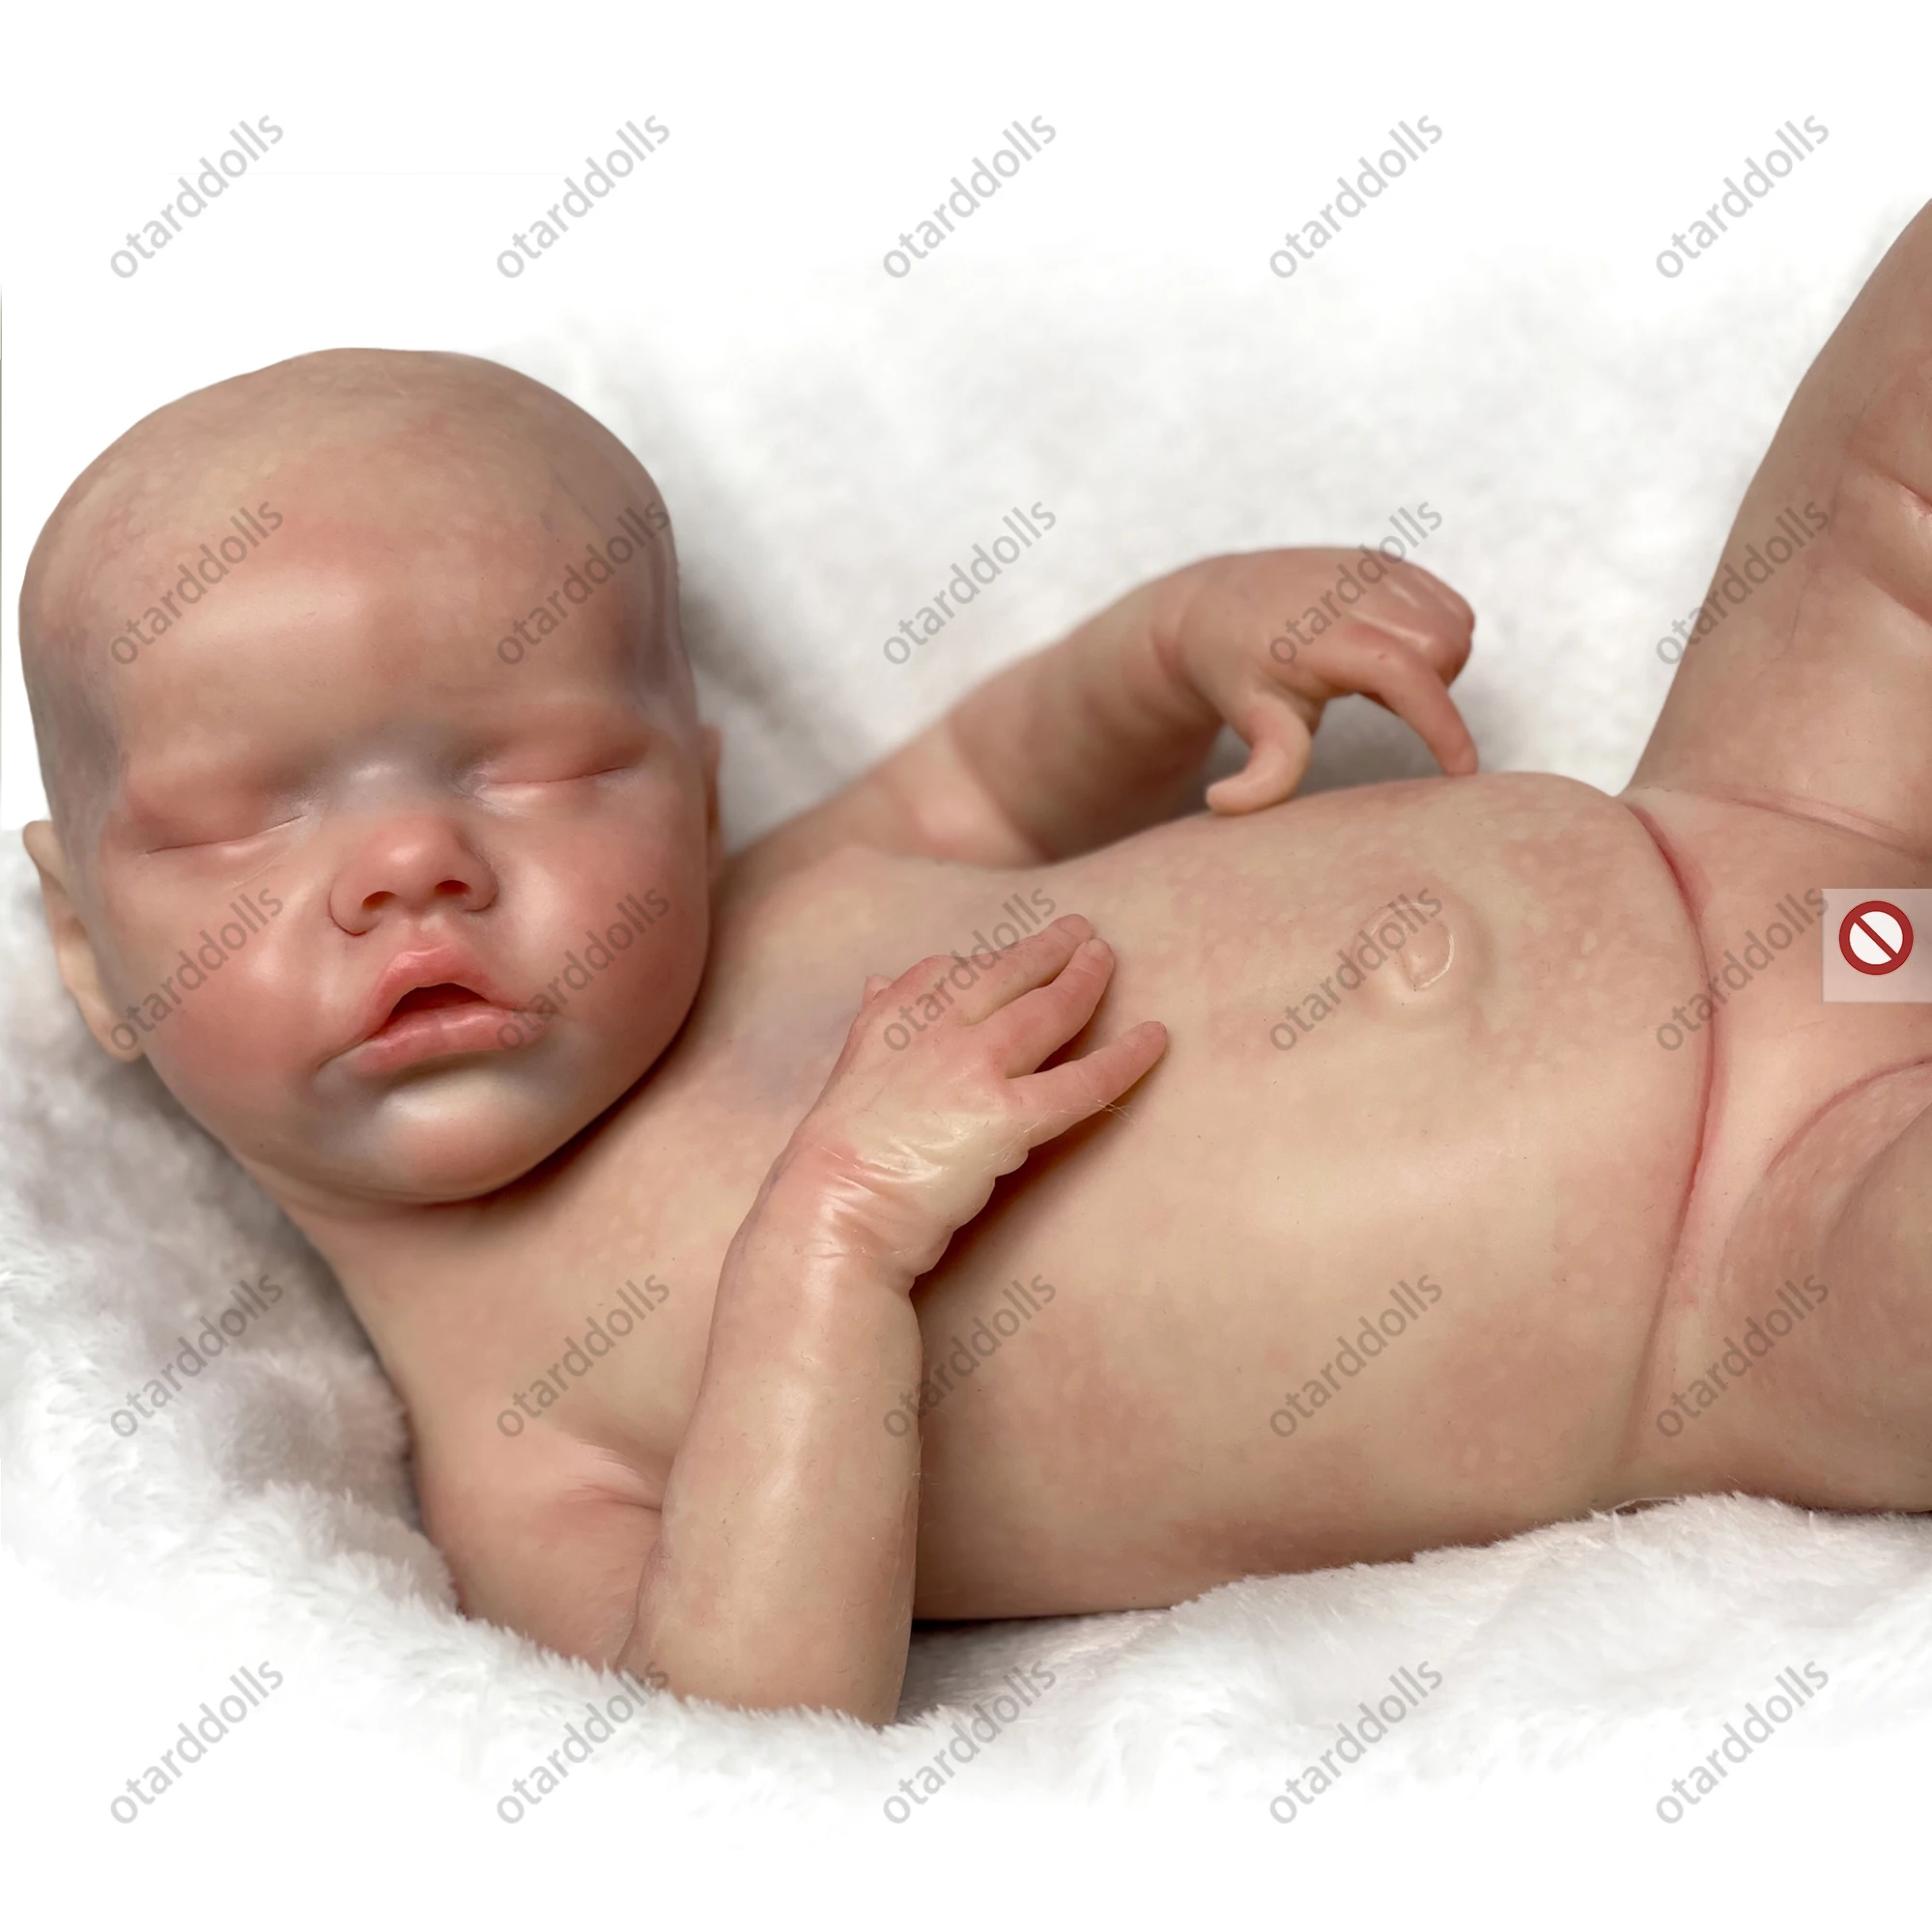 OtardDolls Bebe Reborn Doll Exquisite 18 full Silicone reborn